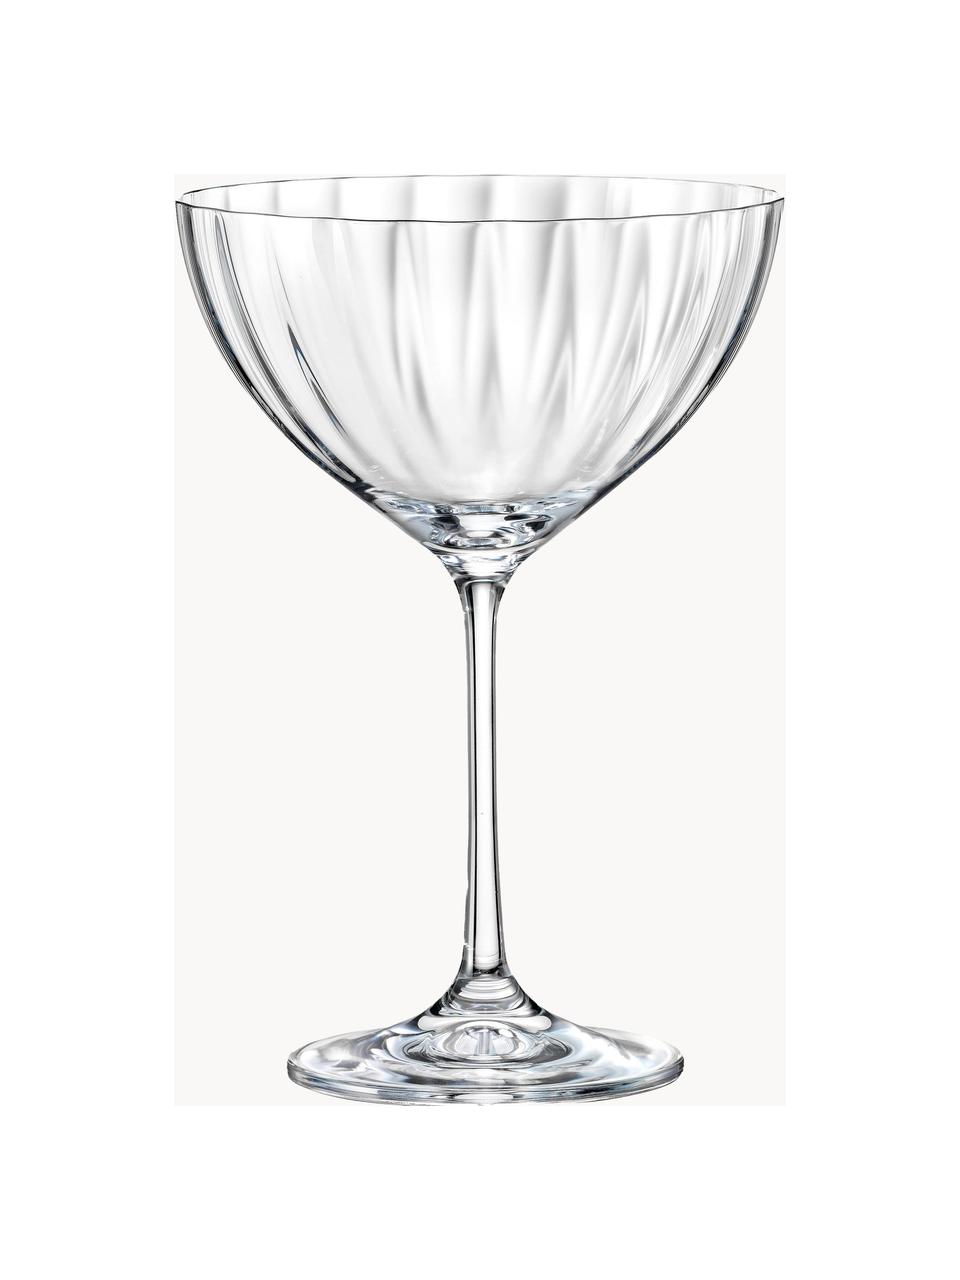 Kristall-Champagnerschalen Luisa, 6 Stück, Kristall-Glas, Transparent, Ø 12 x H 18 cm, 340 ml